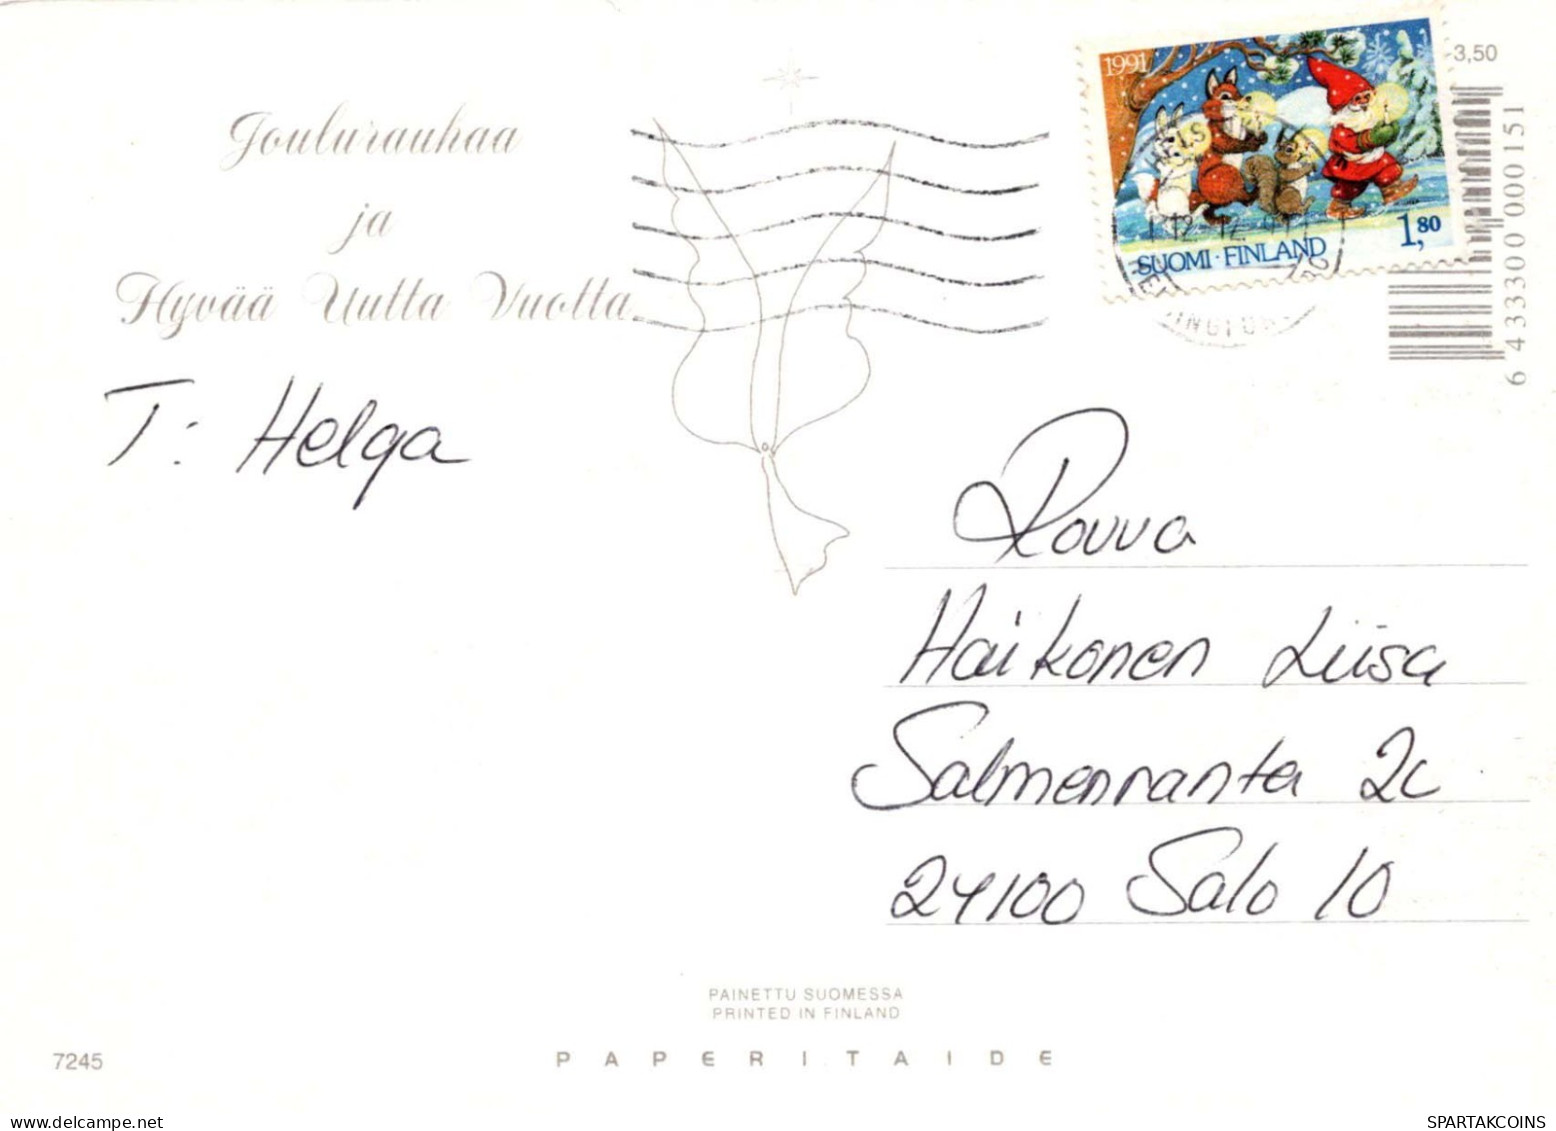 Virgen María Virgen Niño JESÚS Navidad Religión Vintage Tarjeta Postal CPSM #PBB765.ES - Maagd Maria En Madonnas